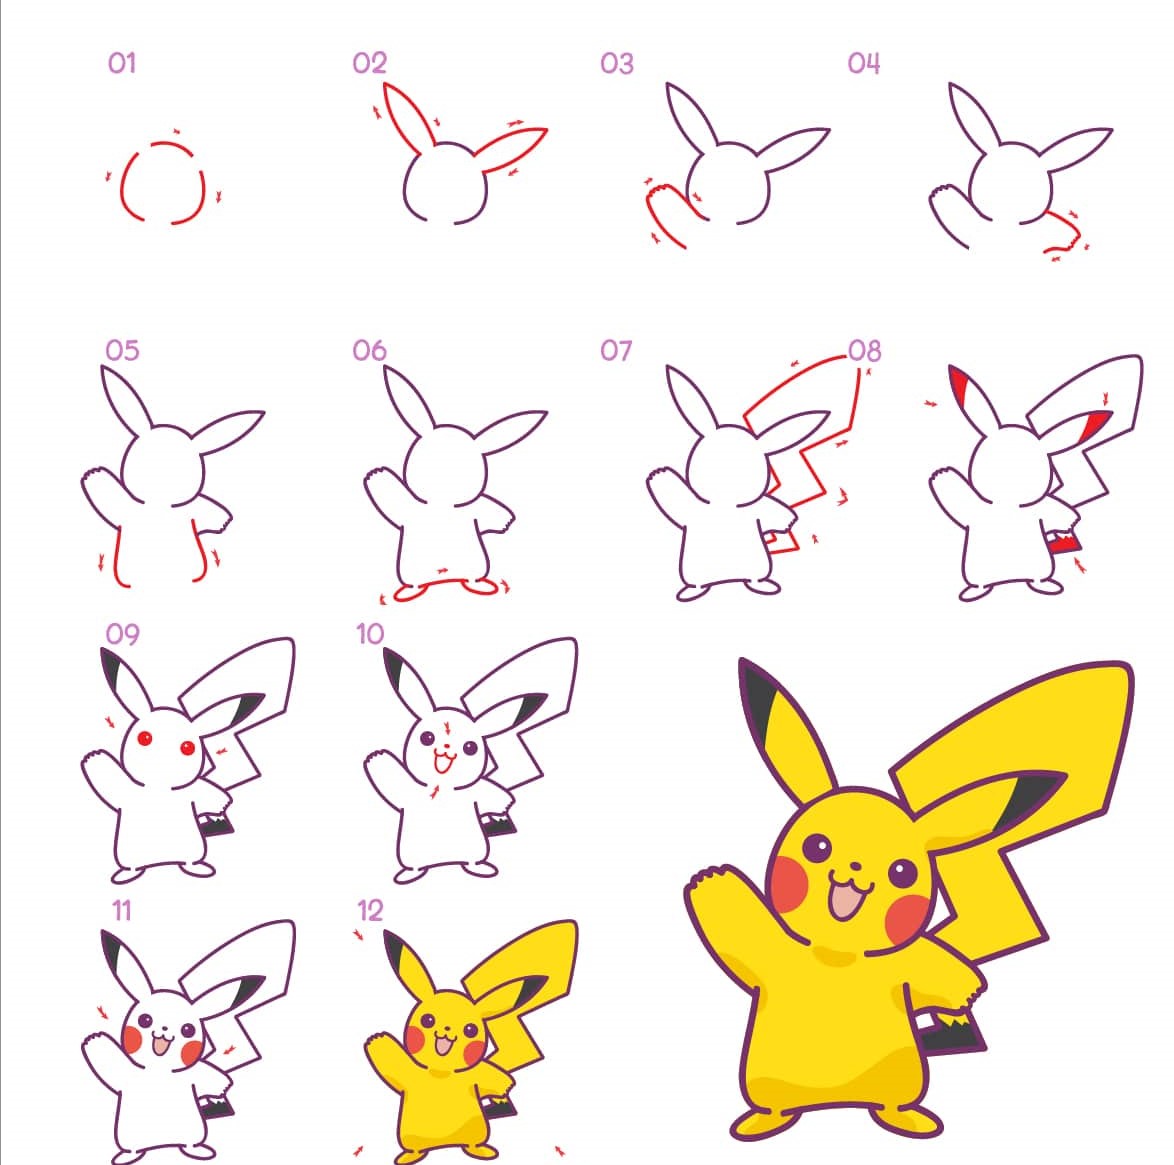 Bạn có muốn vẽ Pikachu trông giống như trong bộ phim hoạt hình Pokemon không? Hãy theo dõi từng bước vẽ trong hướng dẫn này và bạn sẽ thành công một cách dễ dàng. Chỉ cần bút vẽ, giấy và thật nhiều niềm vui, bạn sẽ tạo ra một bức tranh tuyệt vời của nhân vật Pikachu một cách đơn giản.